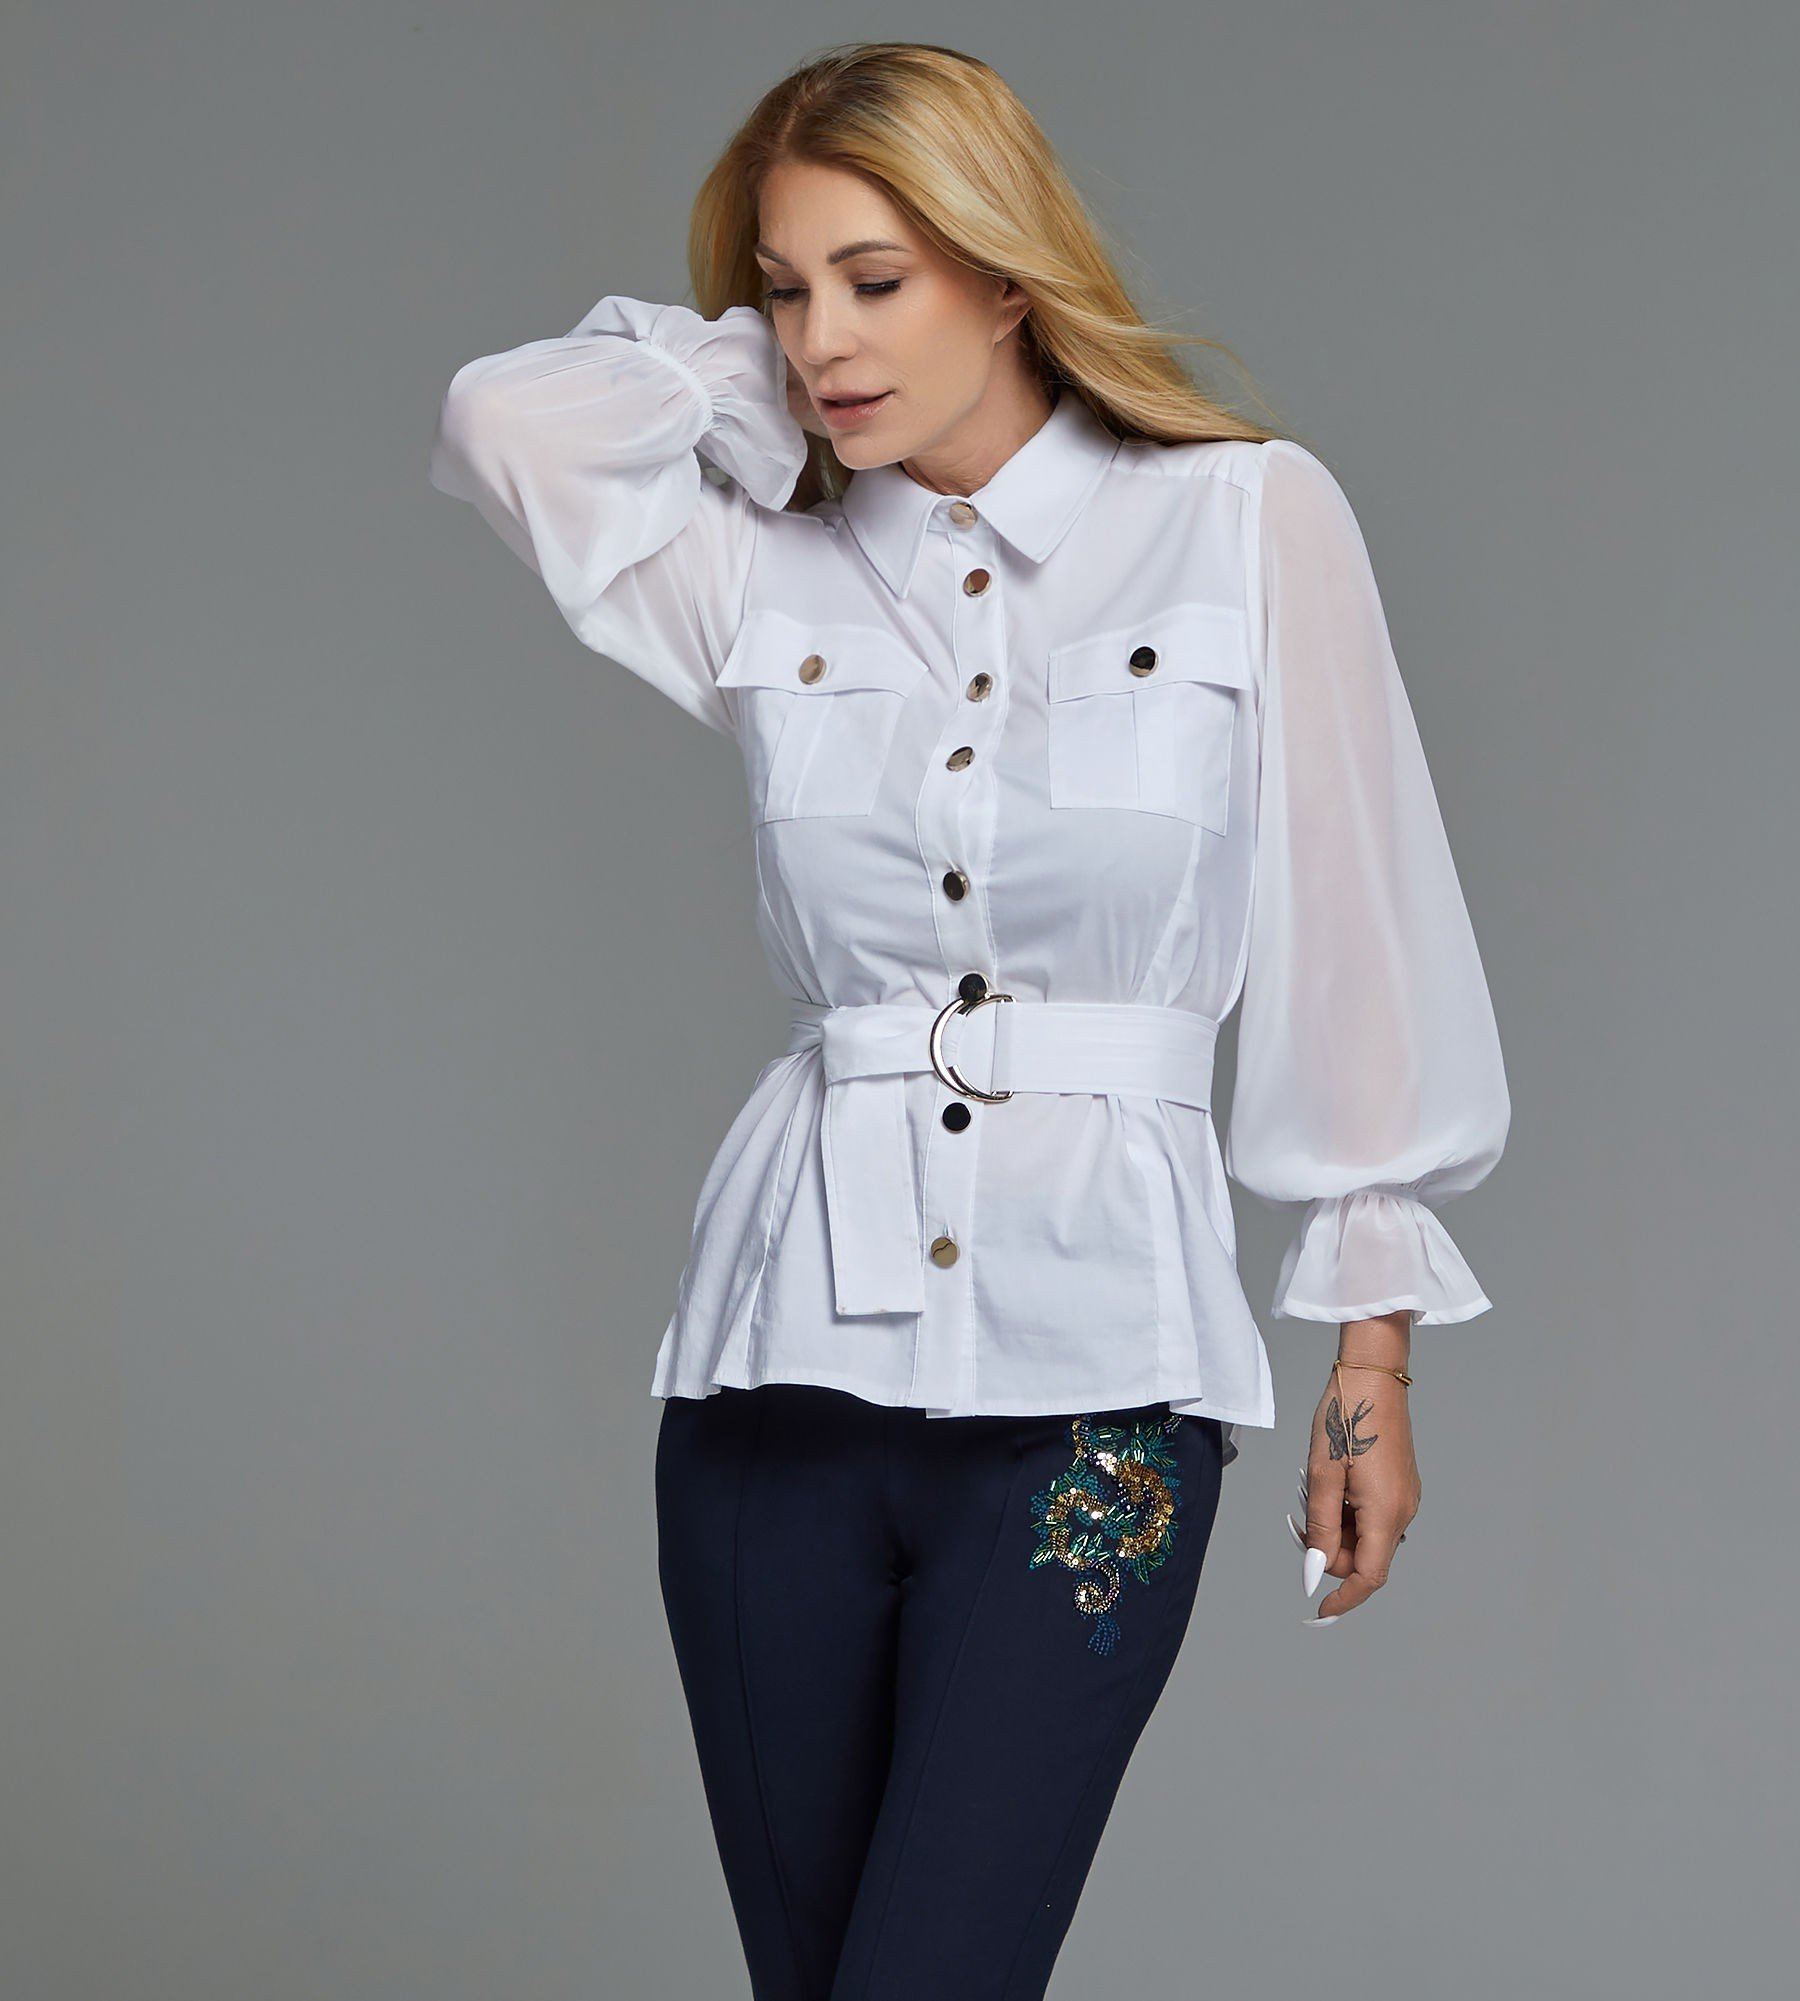 Bluse mit Gürtel - Alle Produkte - Fashion - Sarah Kern - Marken